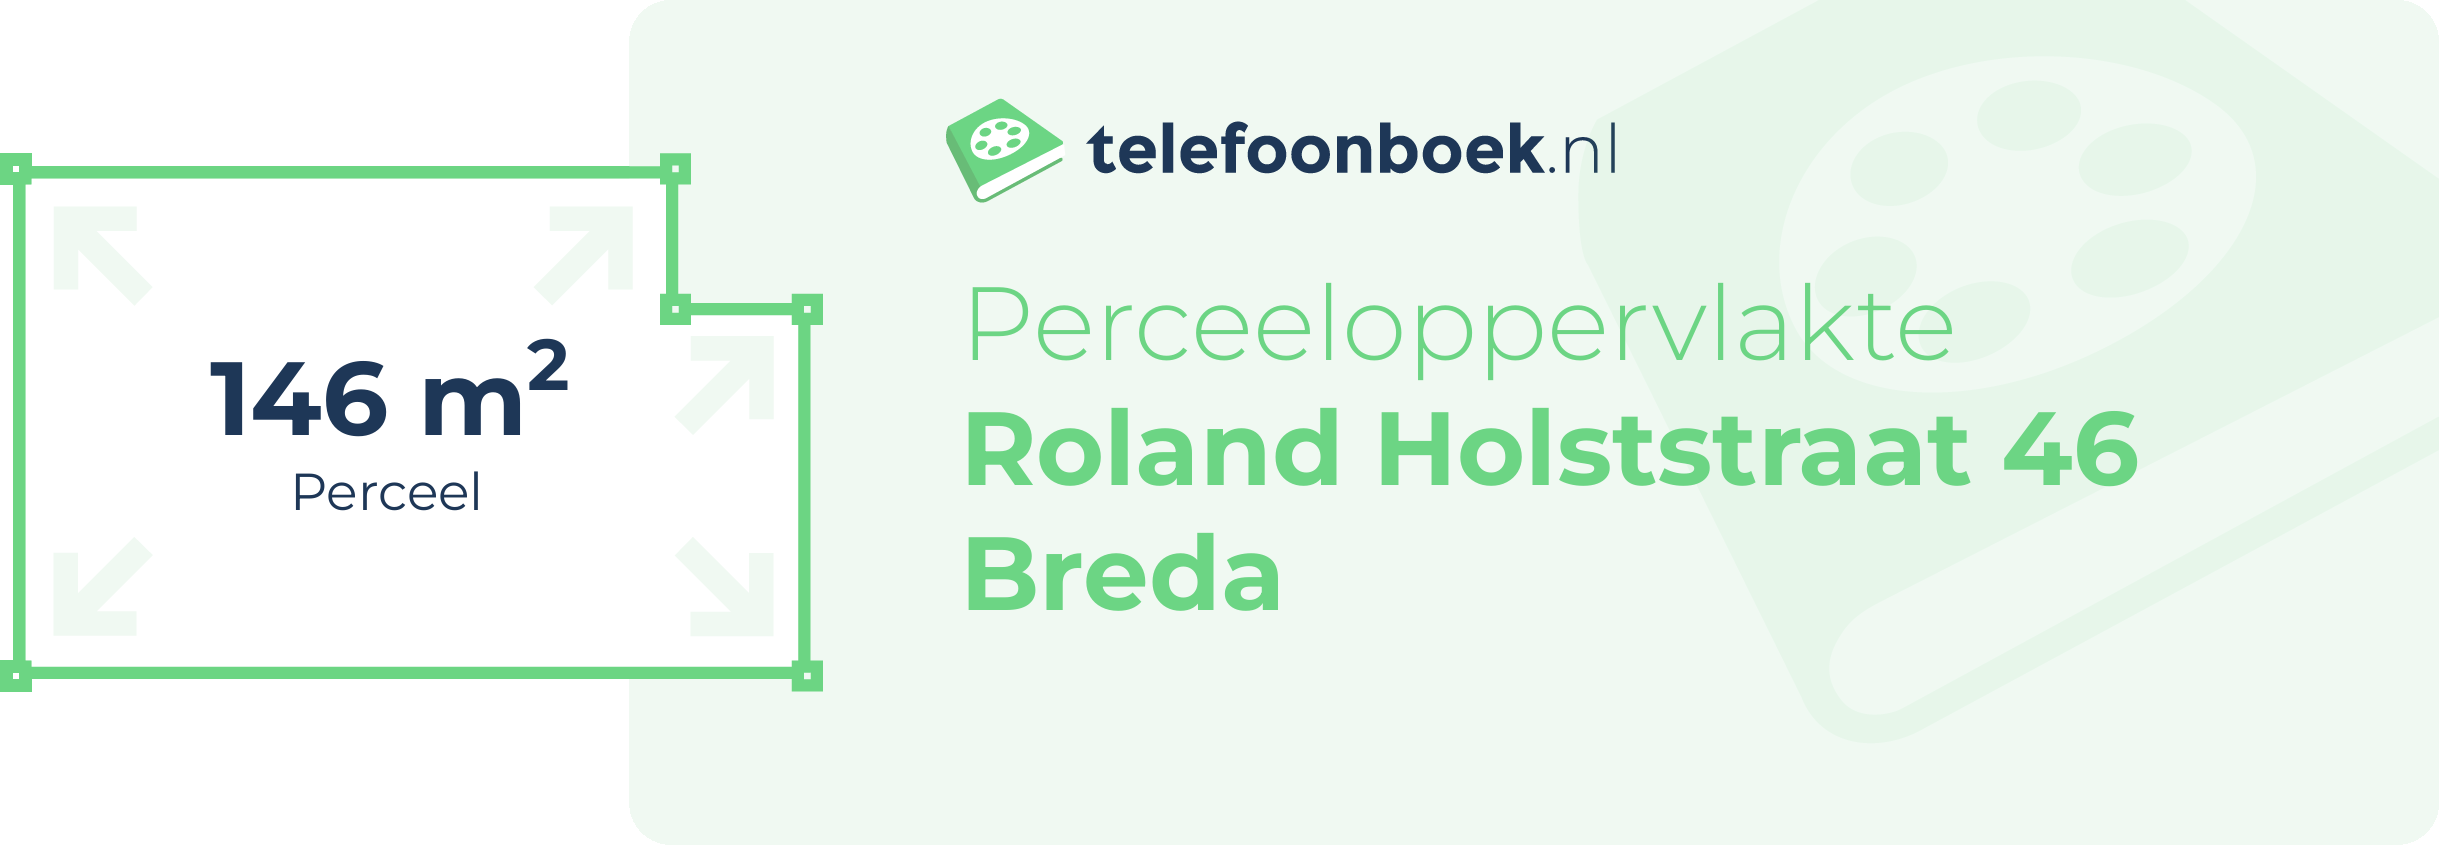 Perceeloppervlakte Roland Holststraat 46 Breda